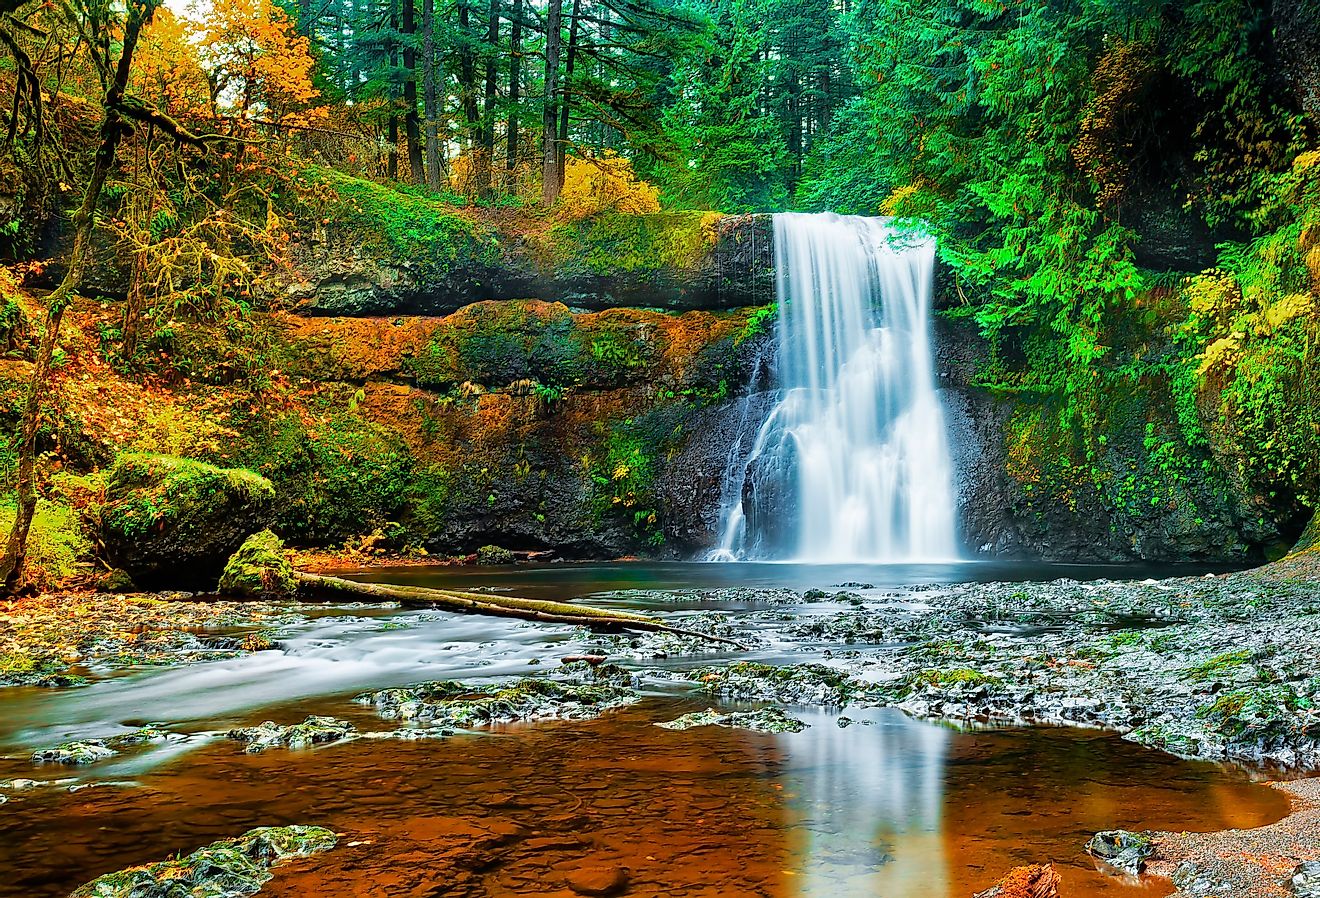 Upper North Falls in Silver Falls State Park near Silverton, Oregon.